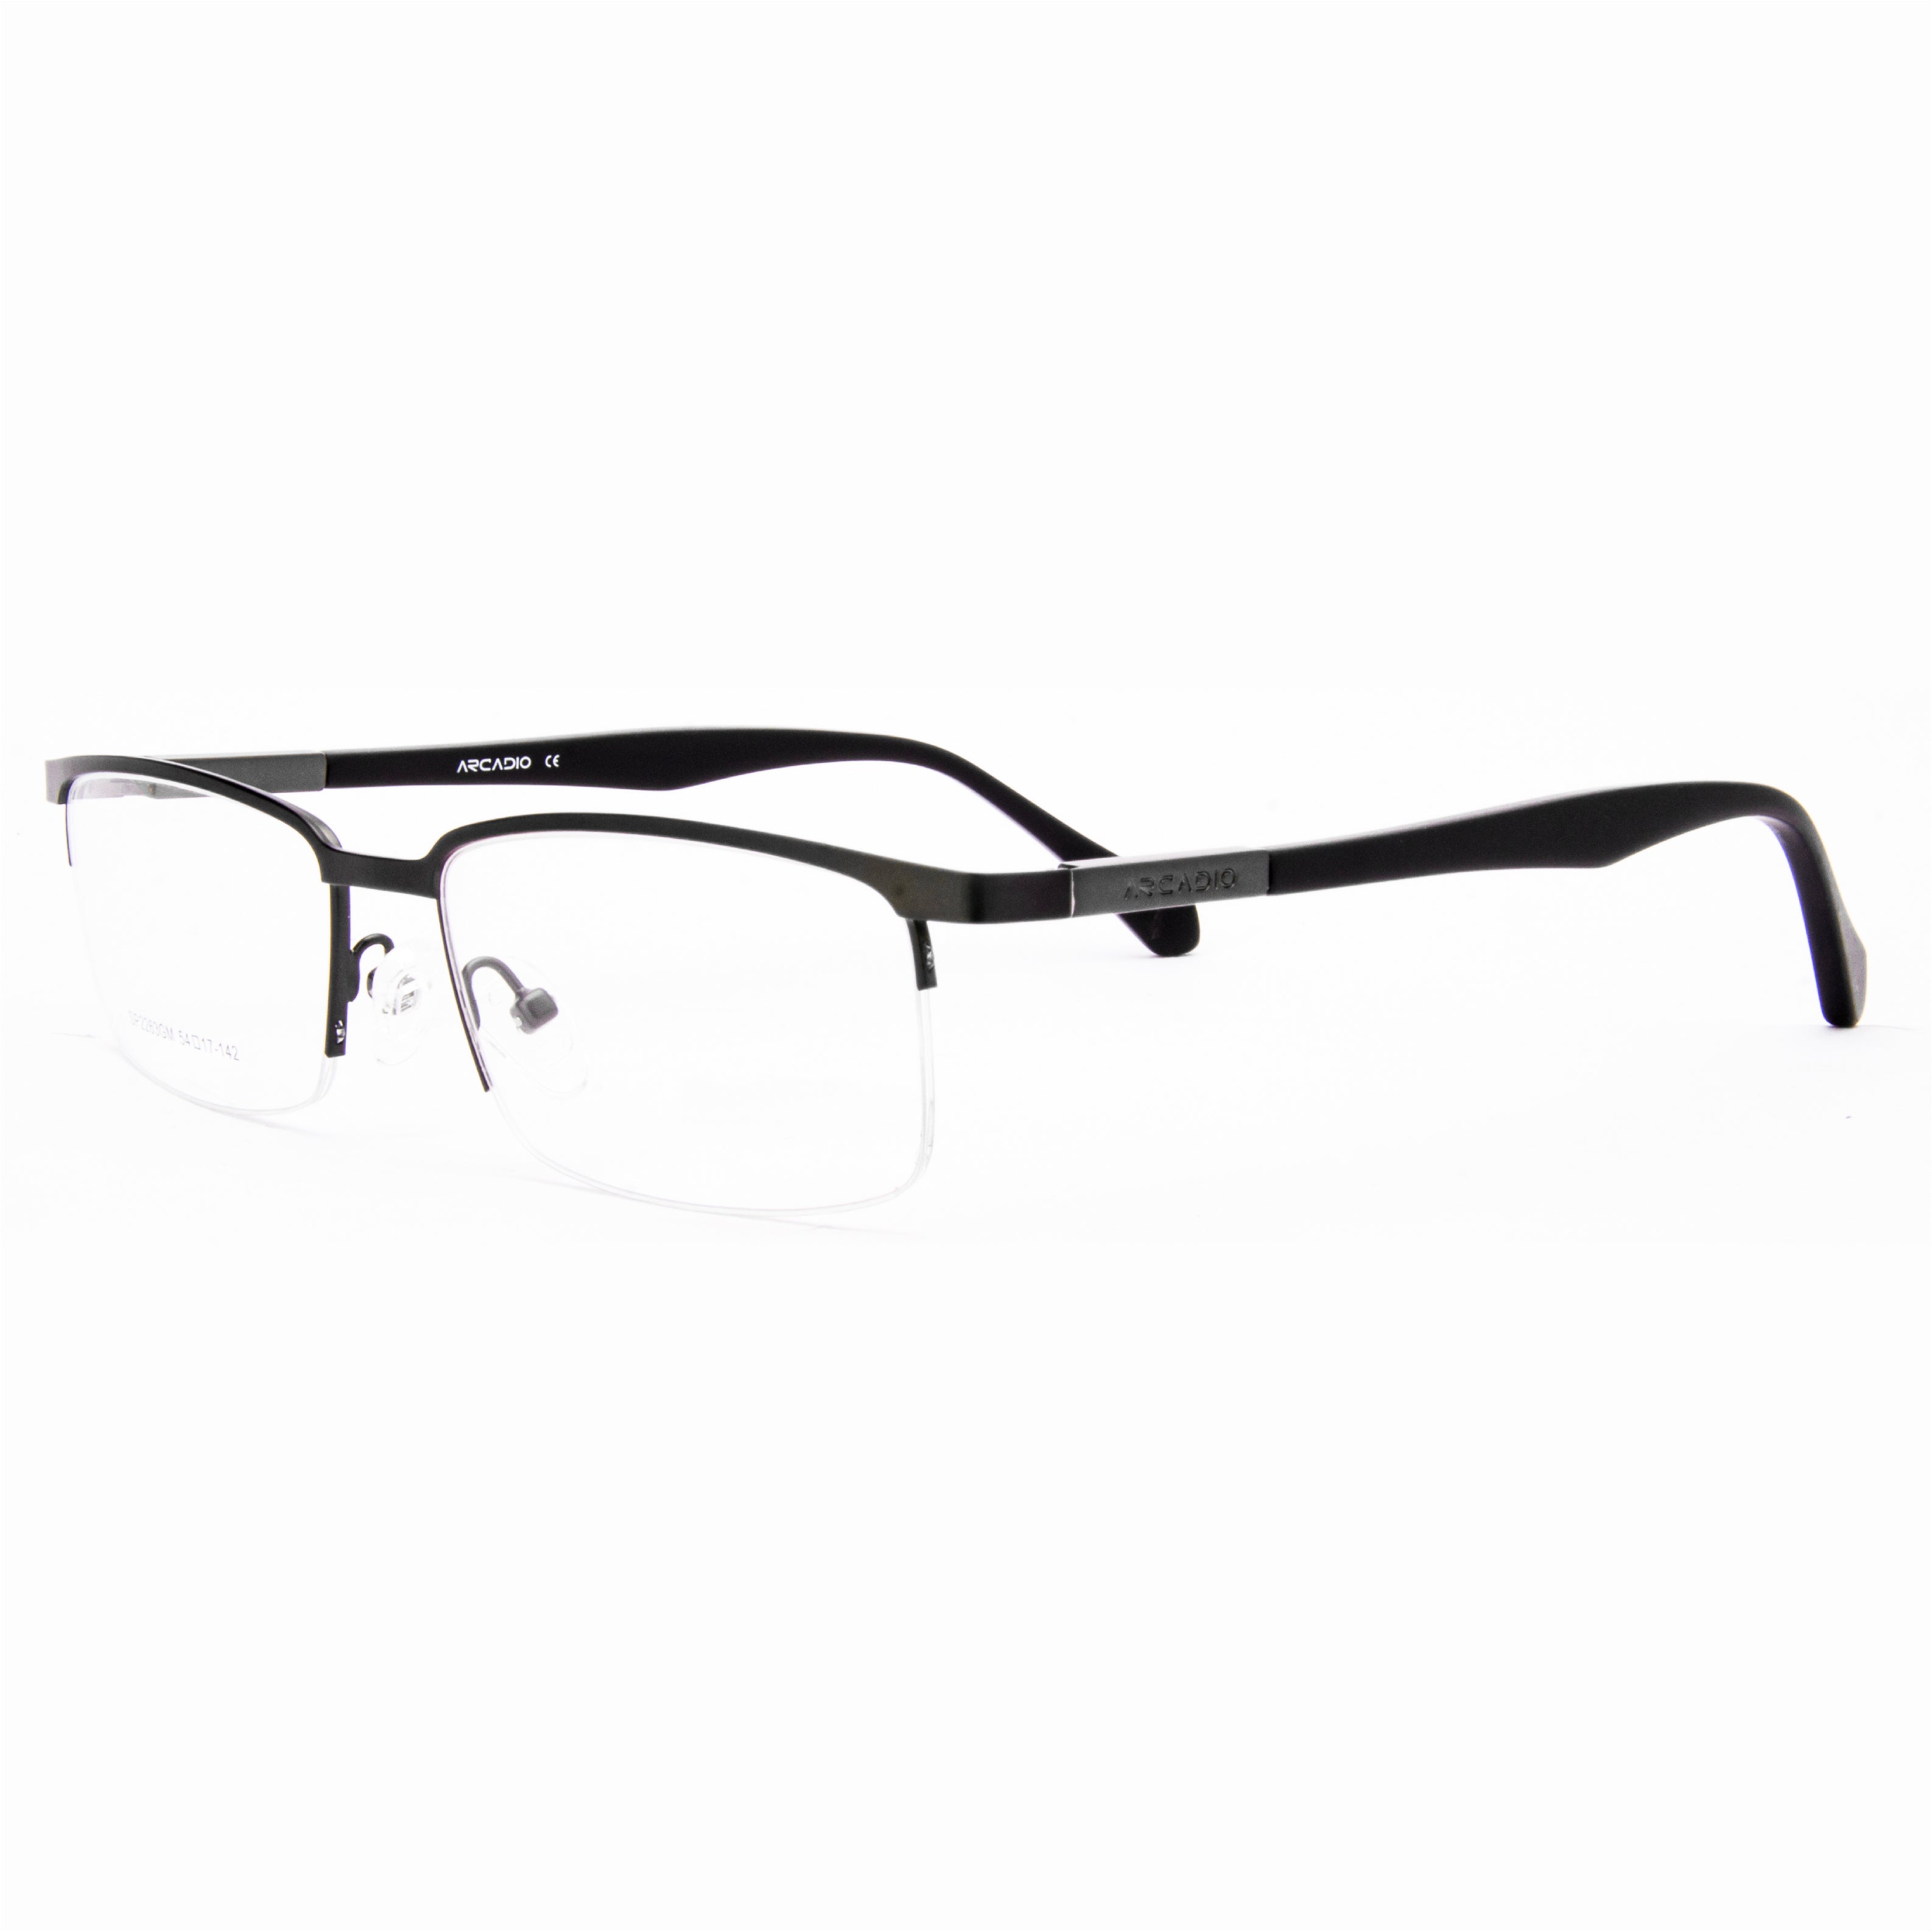 TAYLOR Half Rimmed Eyeglasses SP2263